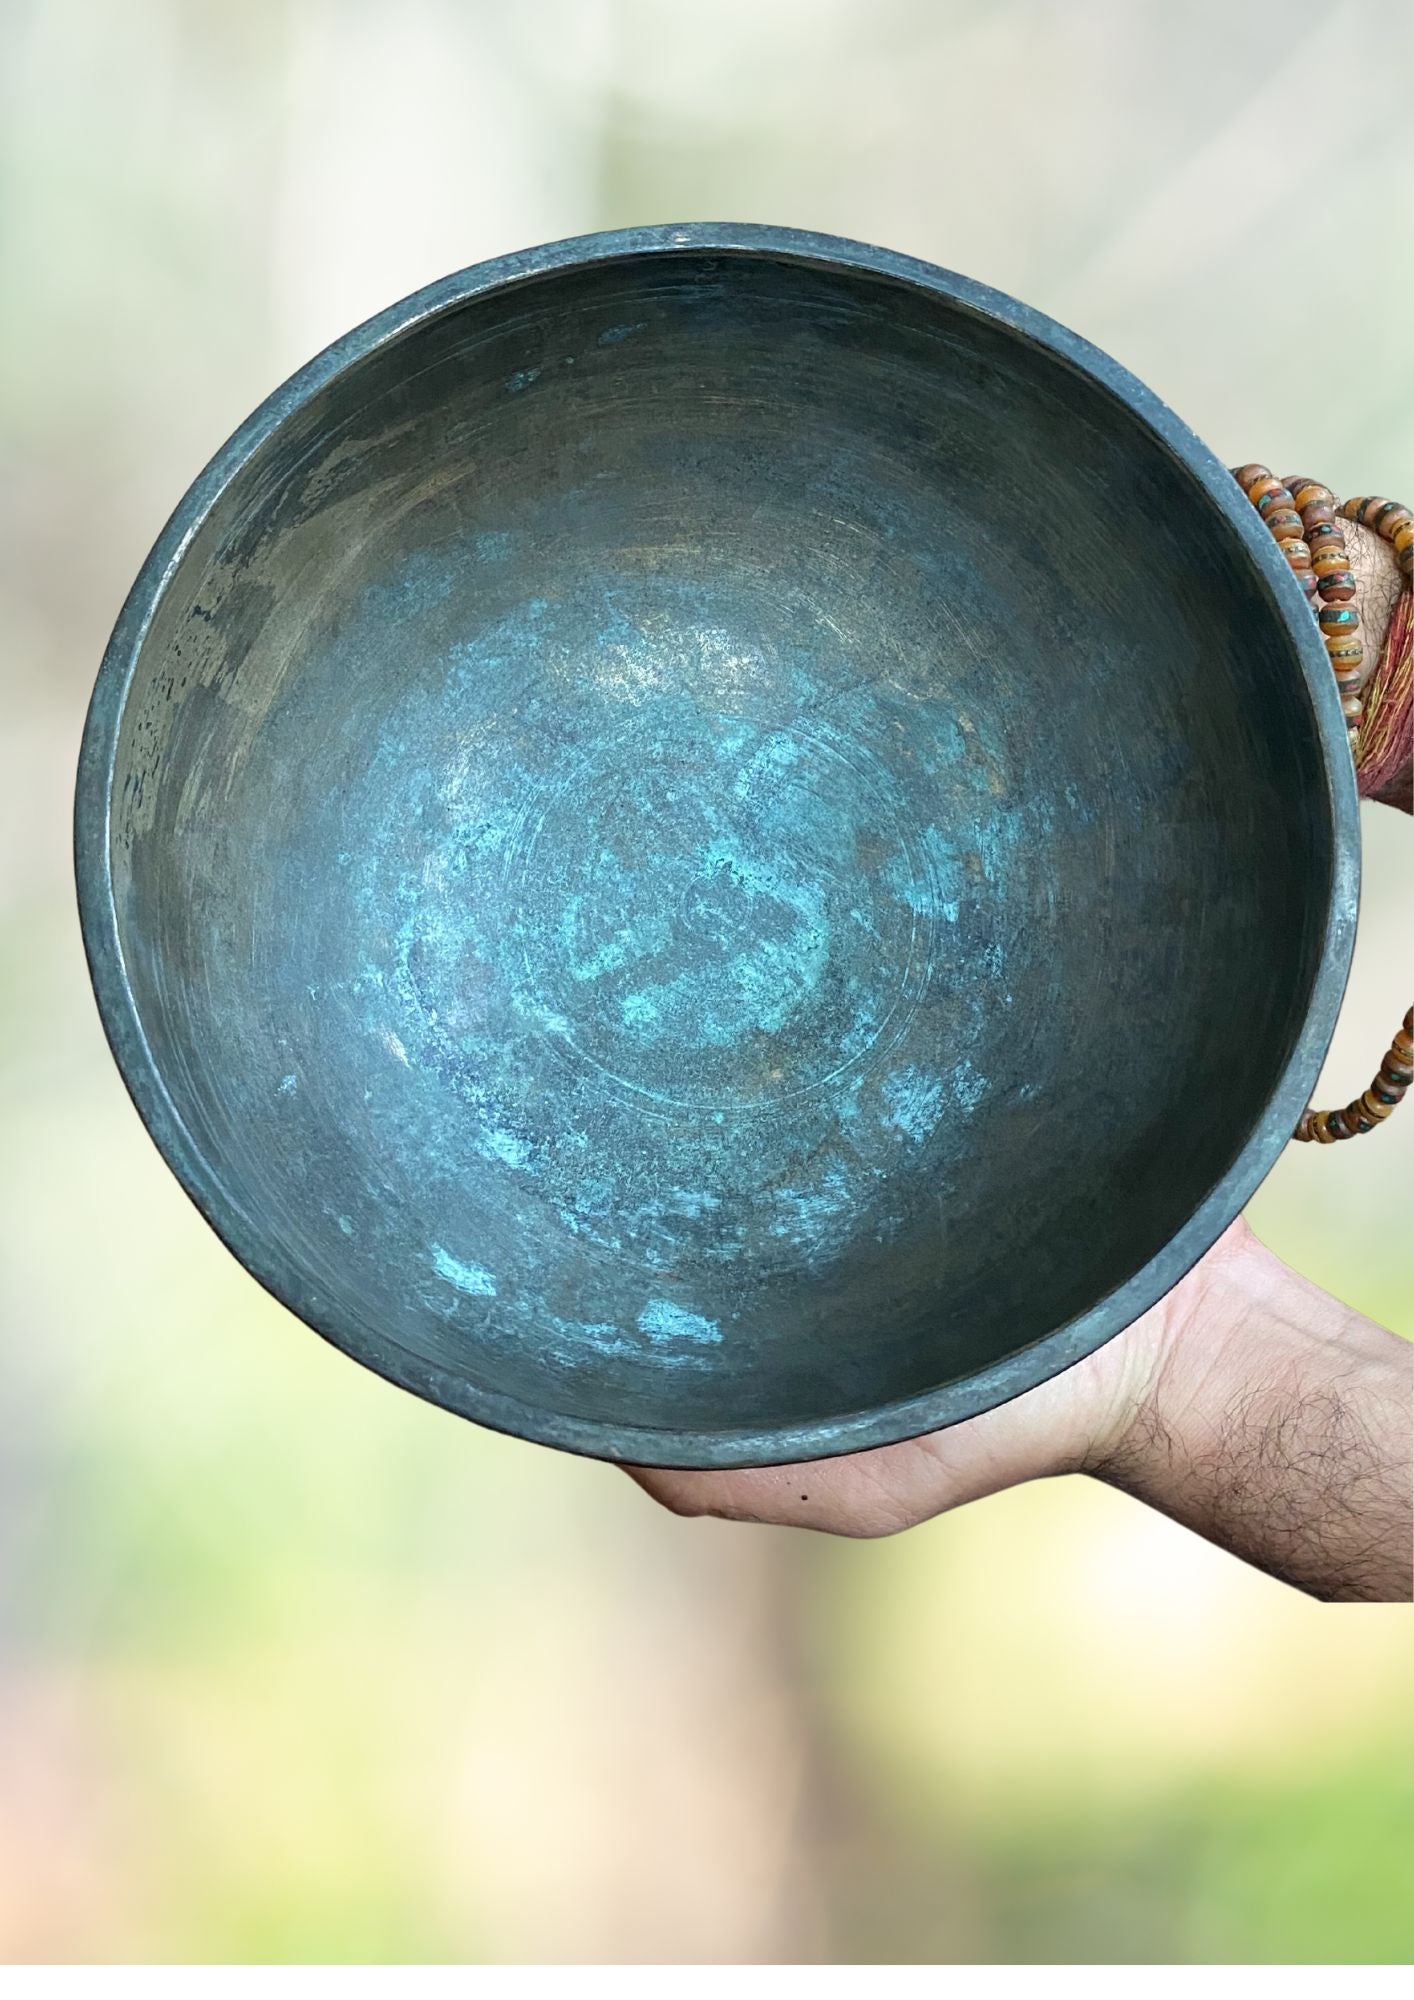 Antique Carved Tibetan Singing Bowl for meditation.